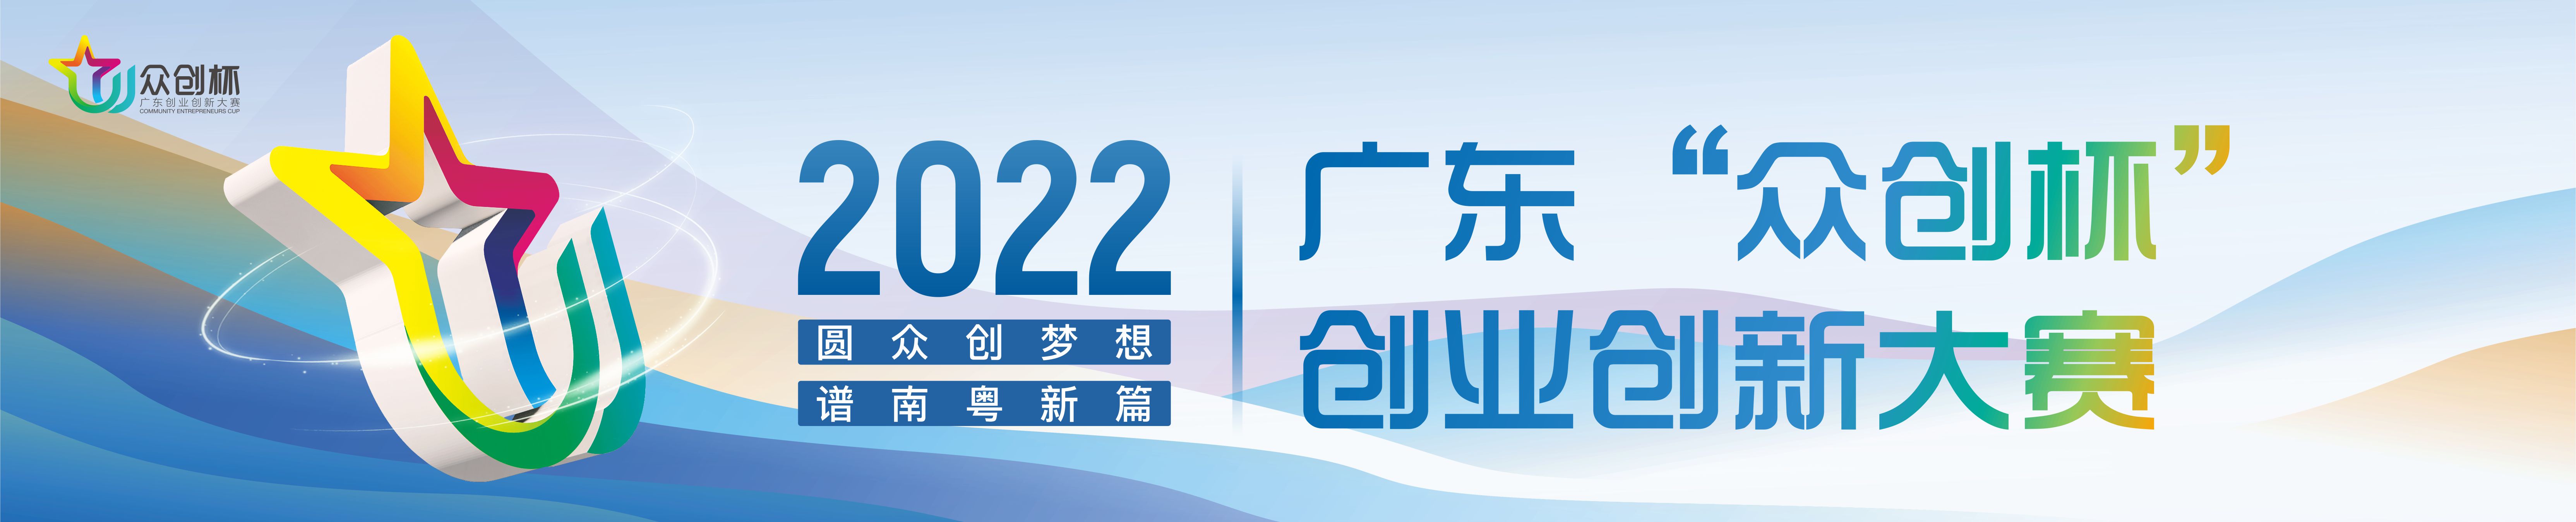 2022年廣東“眾創杯”創業創新大賽啟動